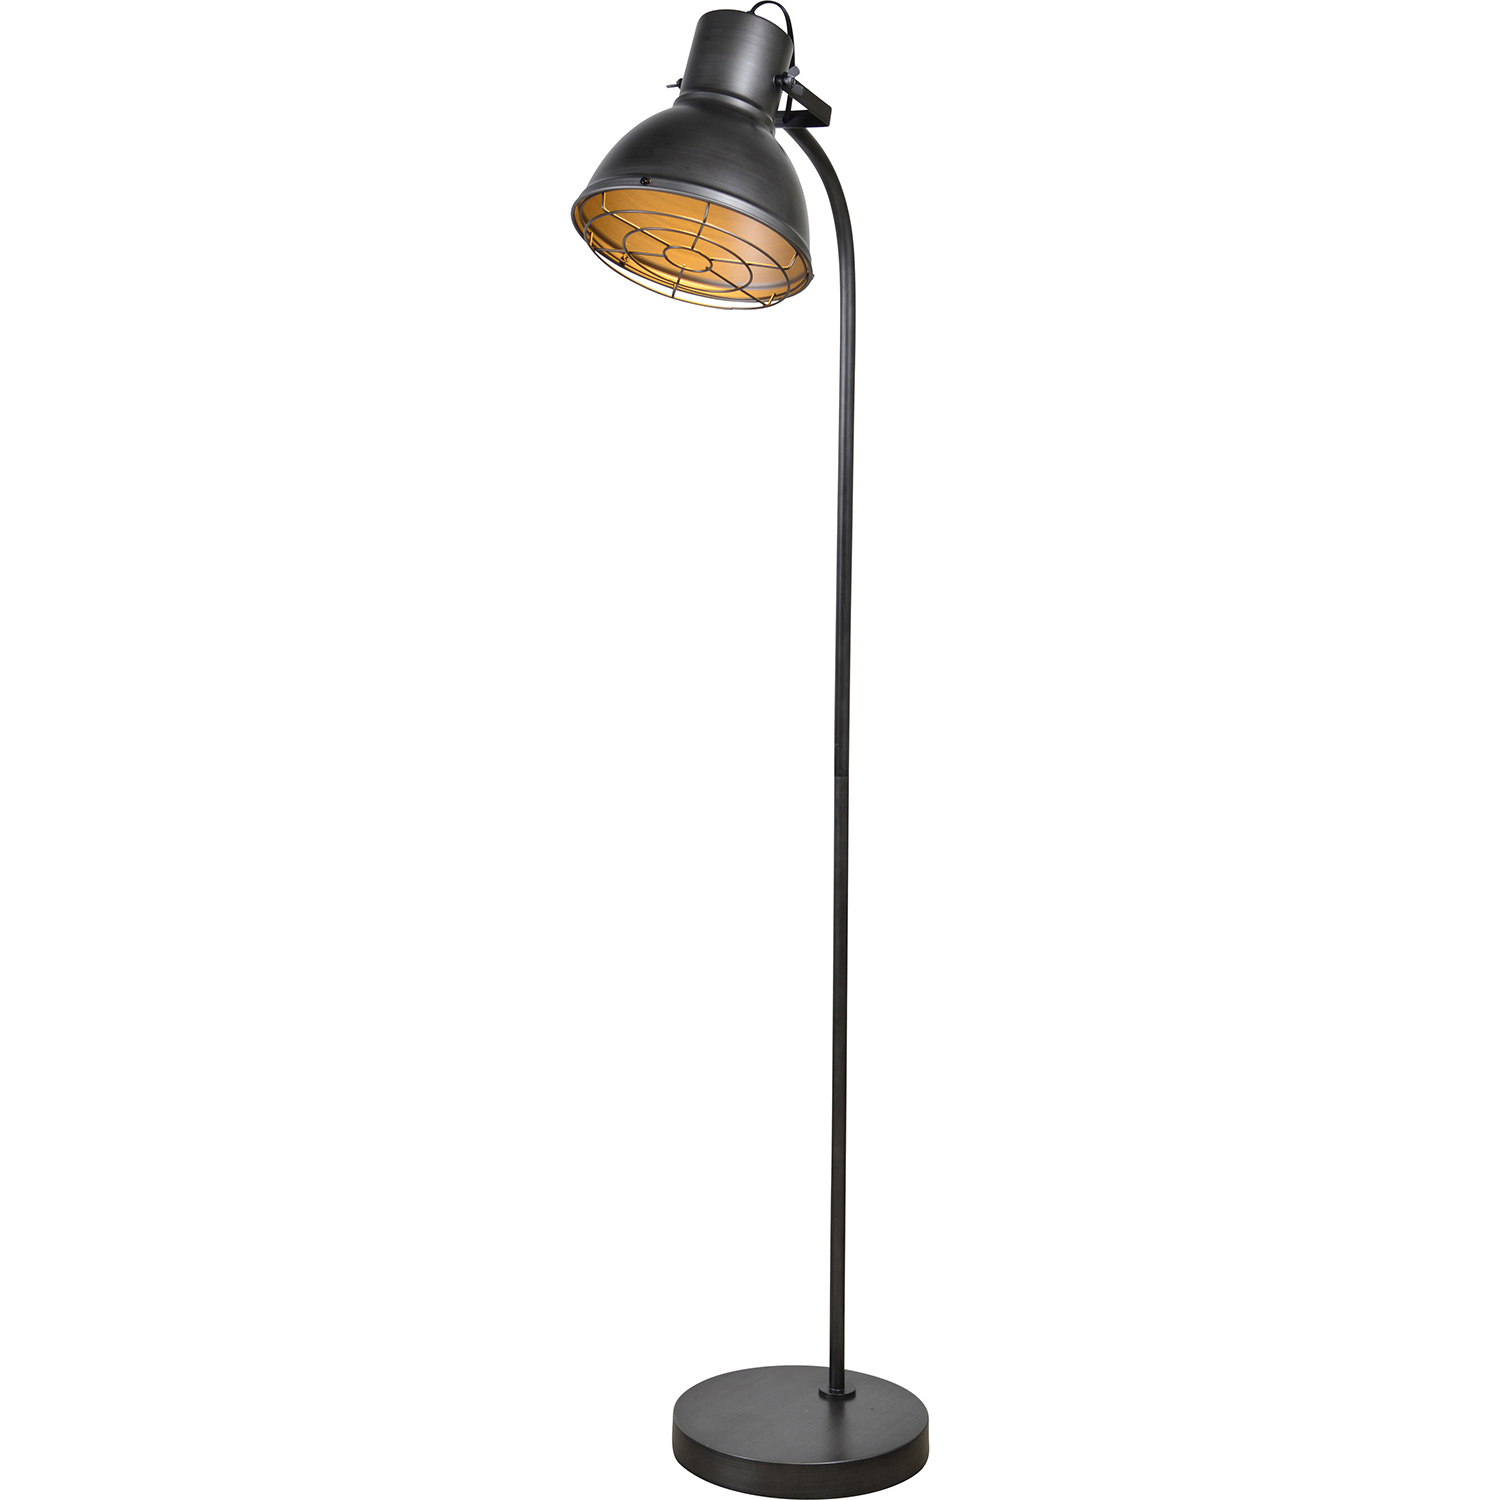 Ren-Wil Perdita Floor Lamp - Charcoal Grey